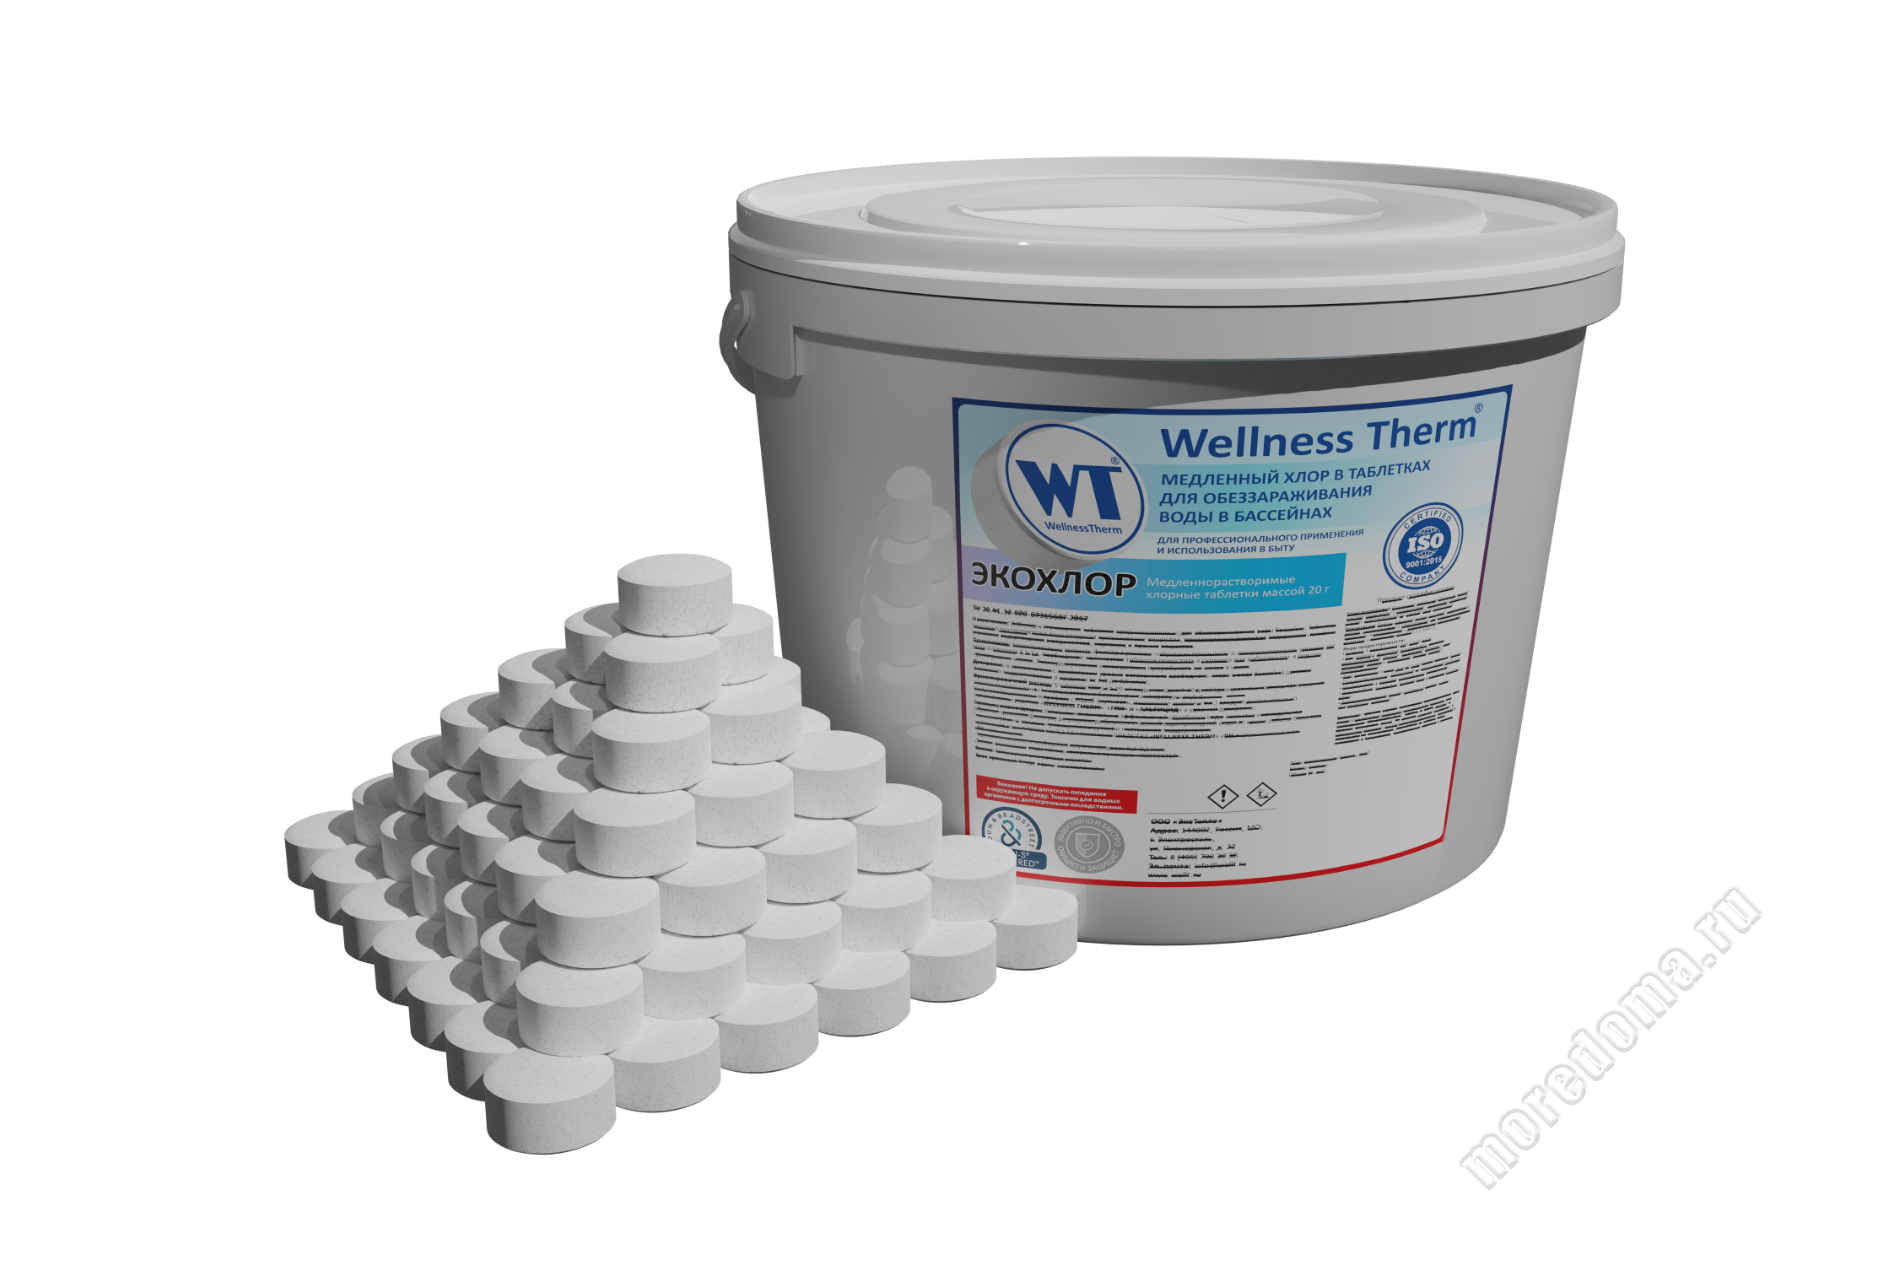 ЭКОХЛОР  Wellness Therm медленно растворимые хлорные таблетки 20г (5 кг), арт. 877420